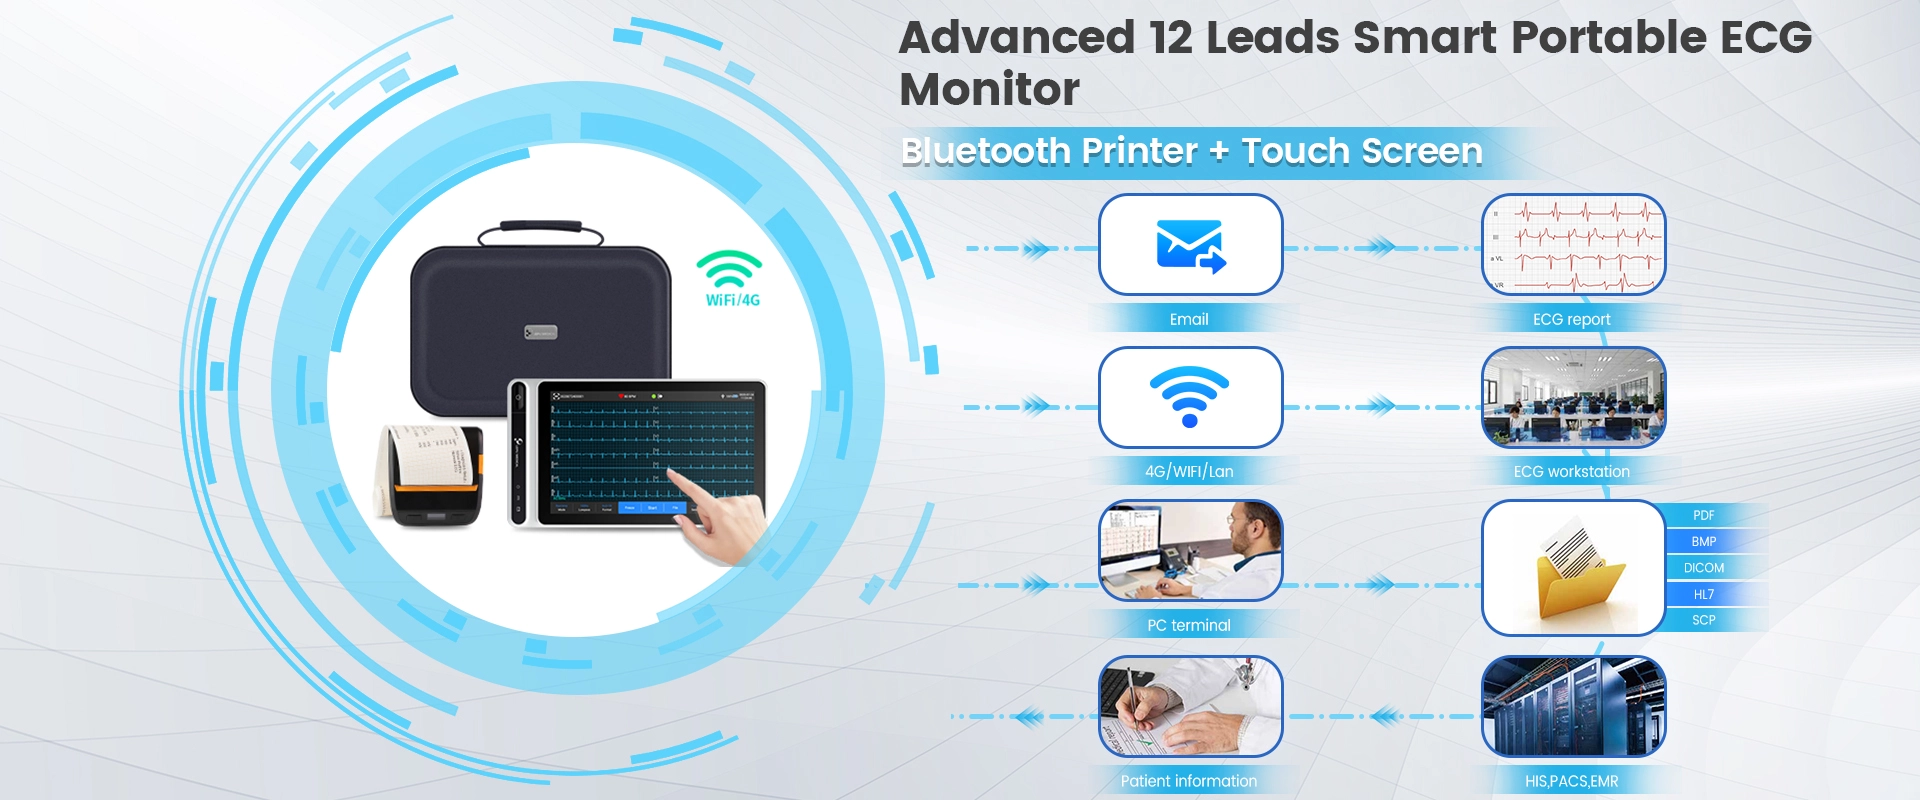 Lepu Medical Grau 12 Leads Monitor ECG portátil inteligente S120 com impressora Bluetooth Análise AI Diagnóstico Tablet tela sensível ao toque